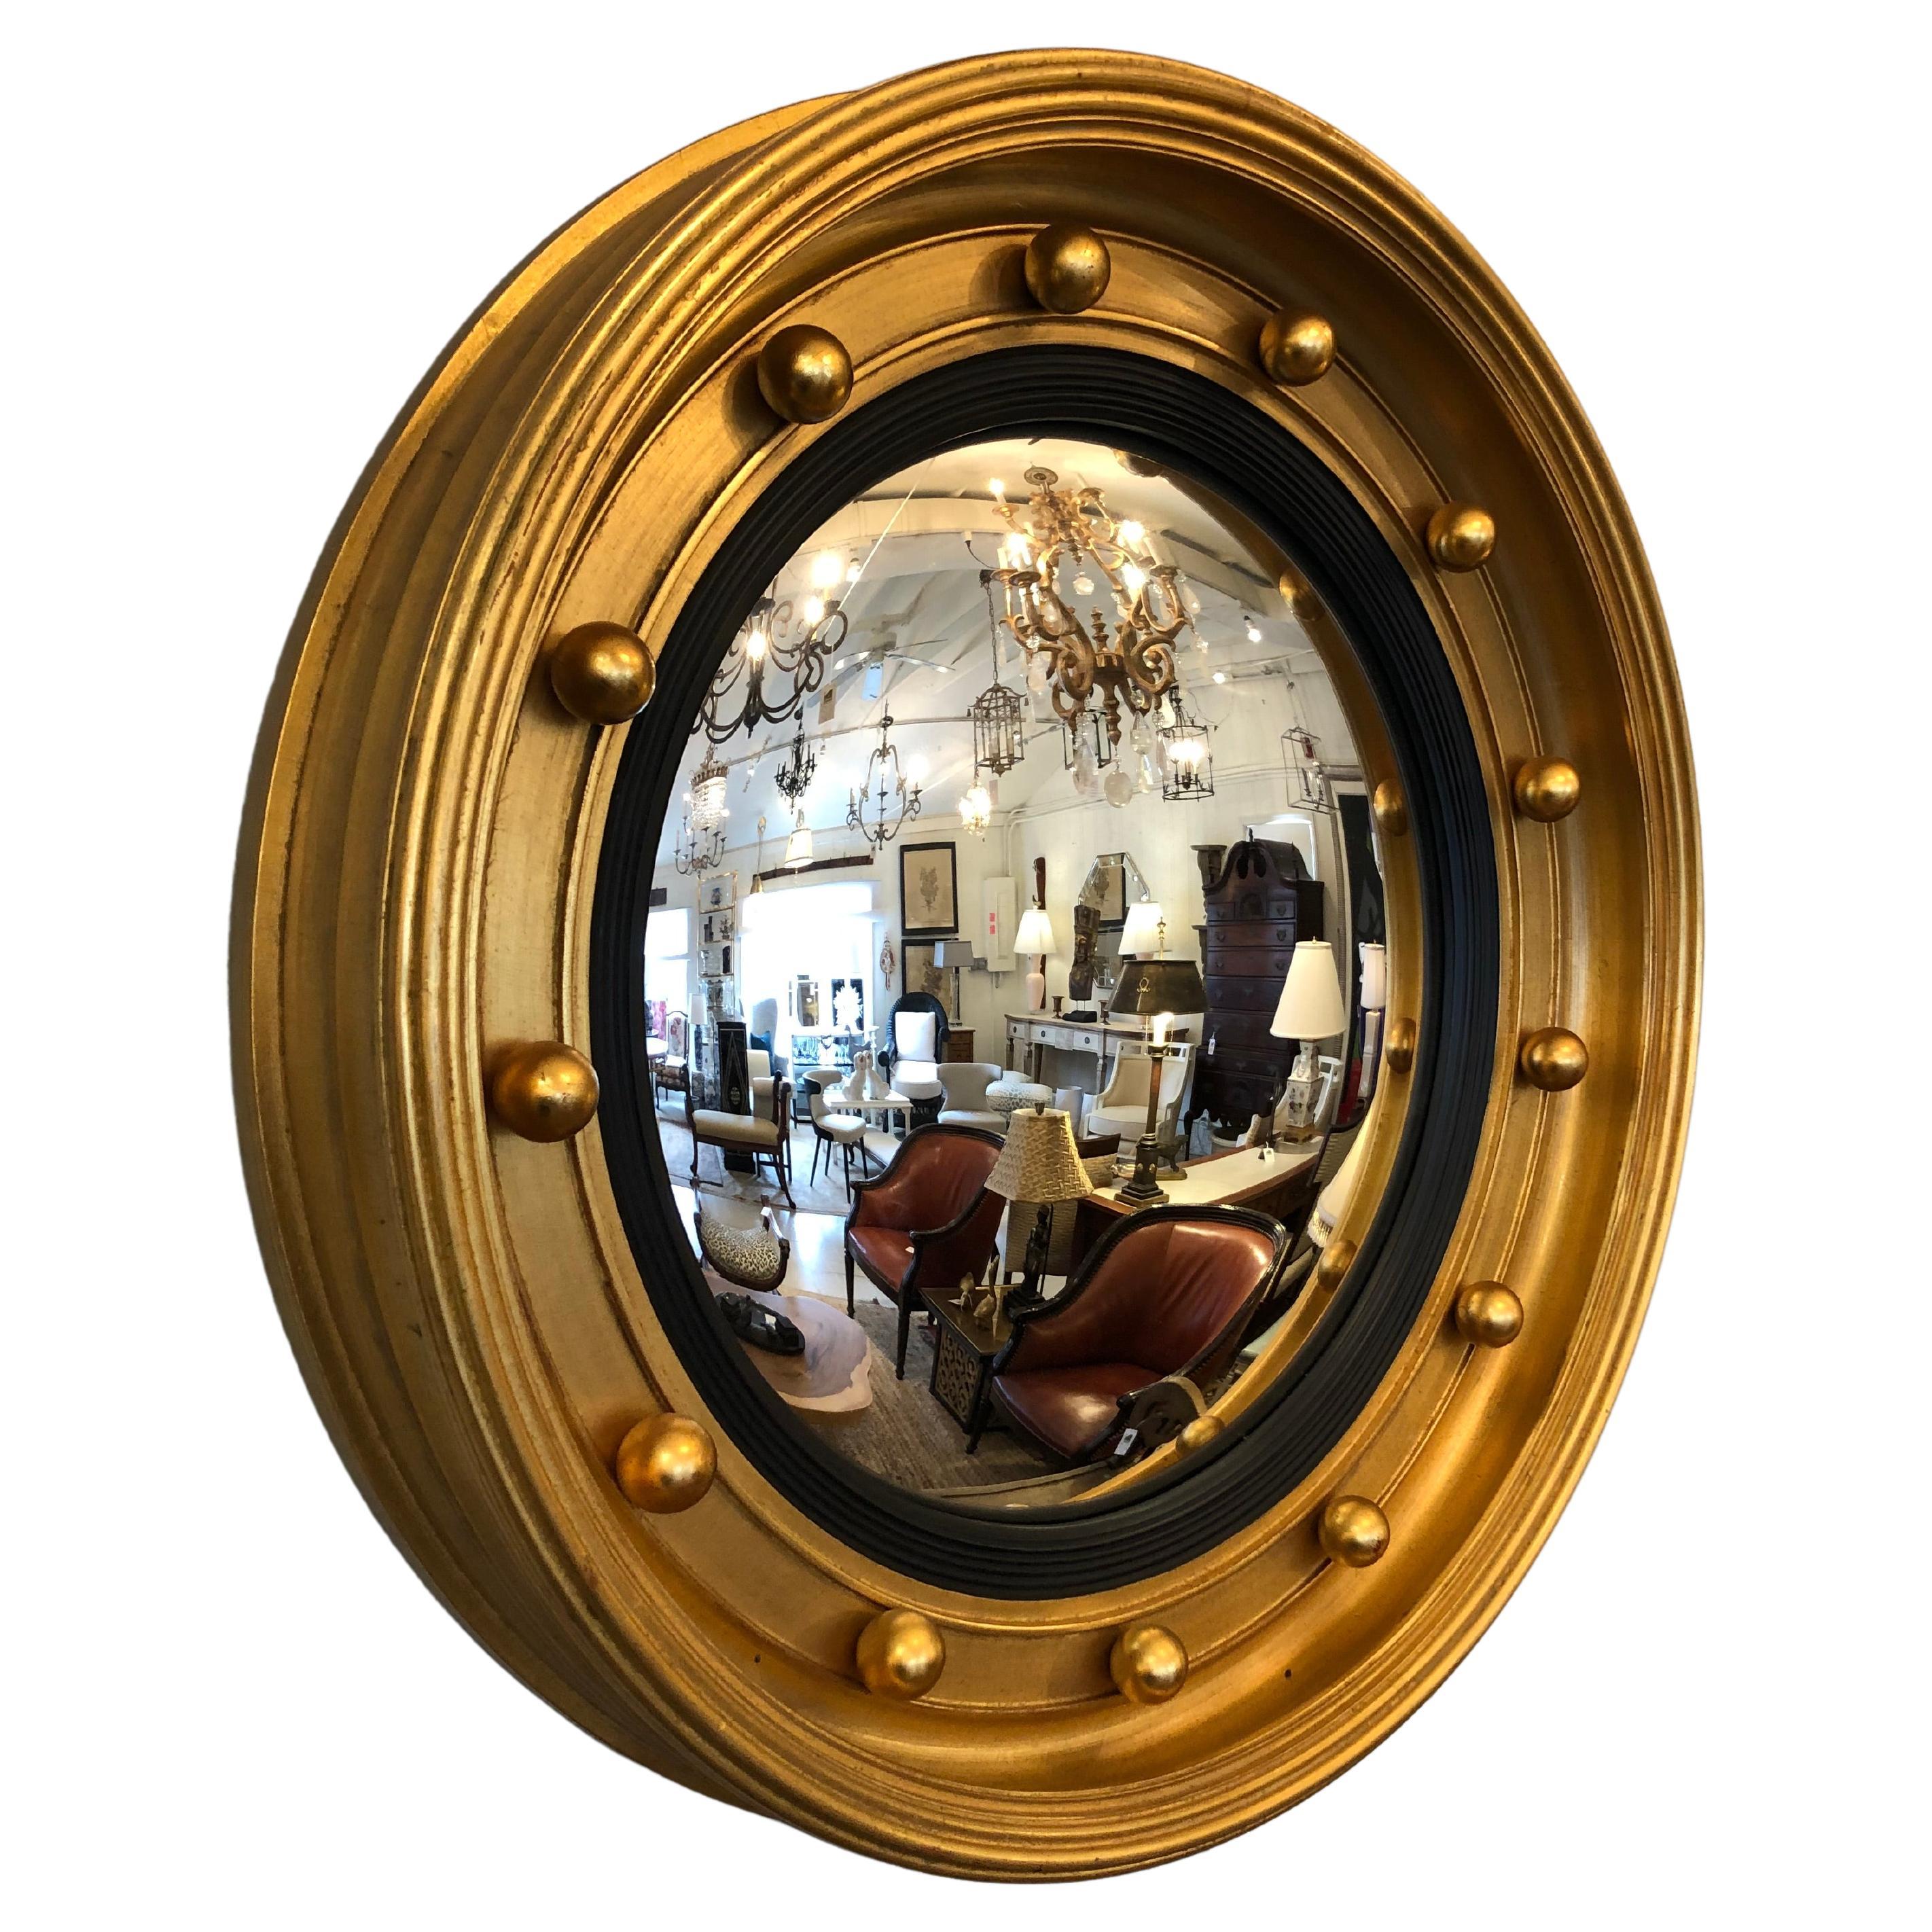 Moderne Interpretation eines runden, konvexen Spiegels im neoklassischen Stil mit einem extrem klobigen Rahmen aus vergoldetem Holz und einer dreidimensionalen Kugelverzierung.  5,5